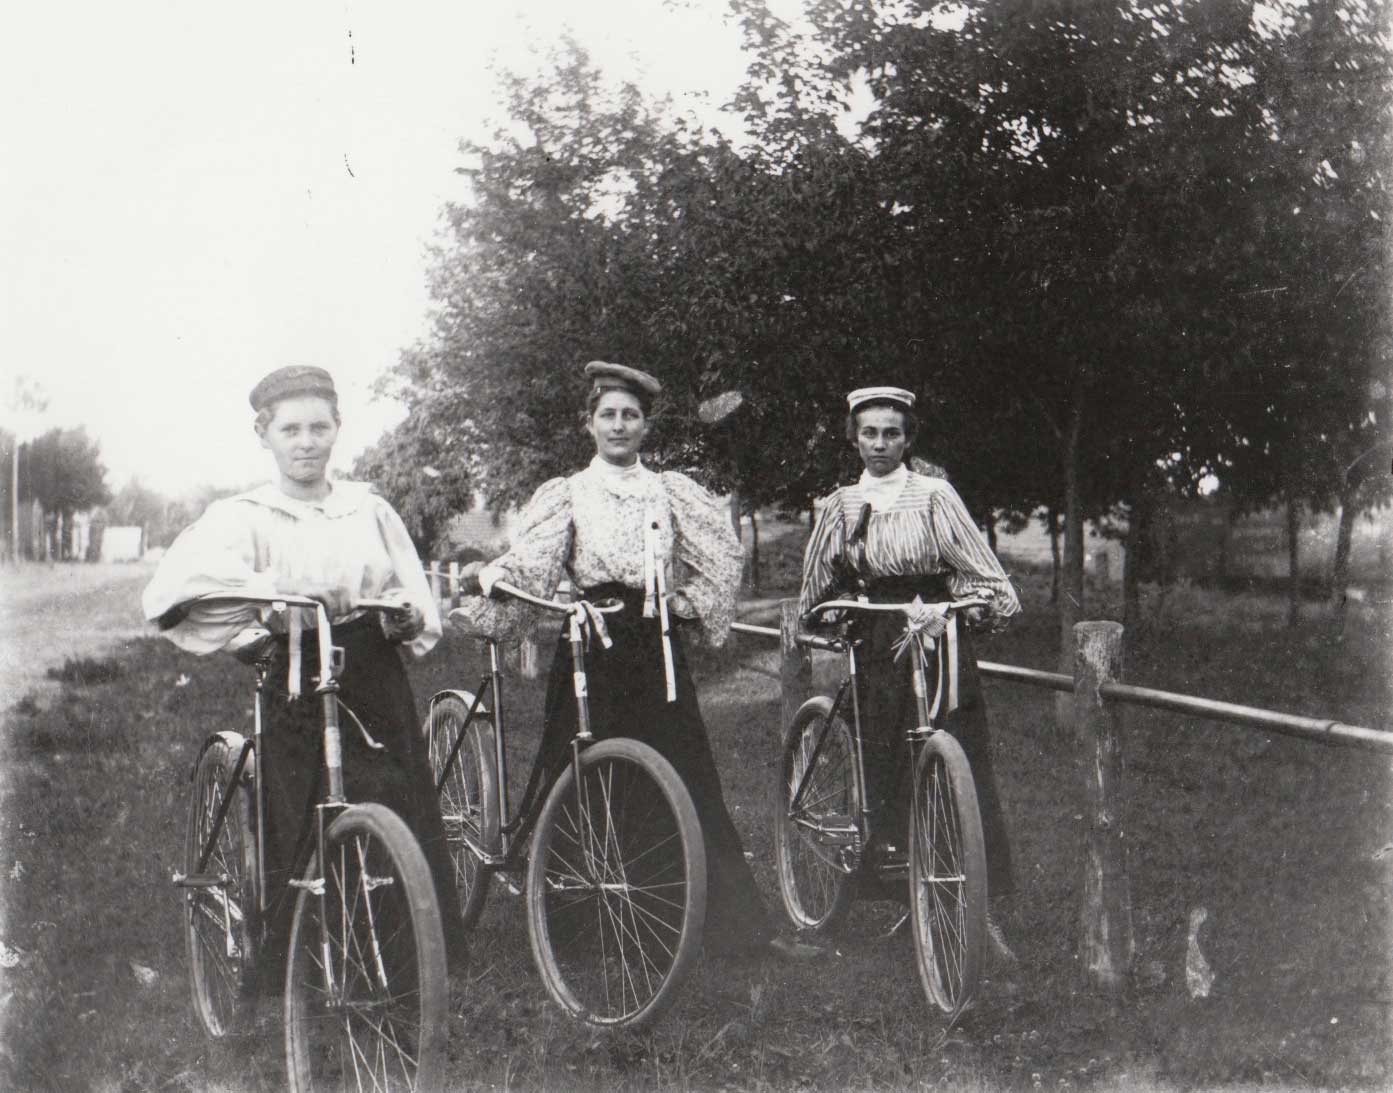 1. Women bicyclists